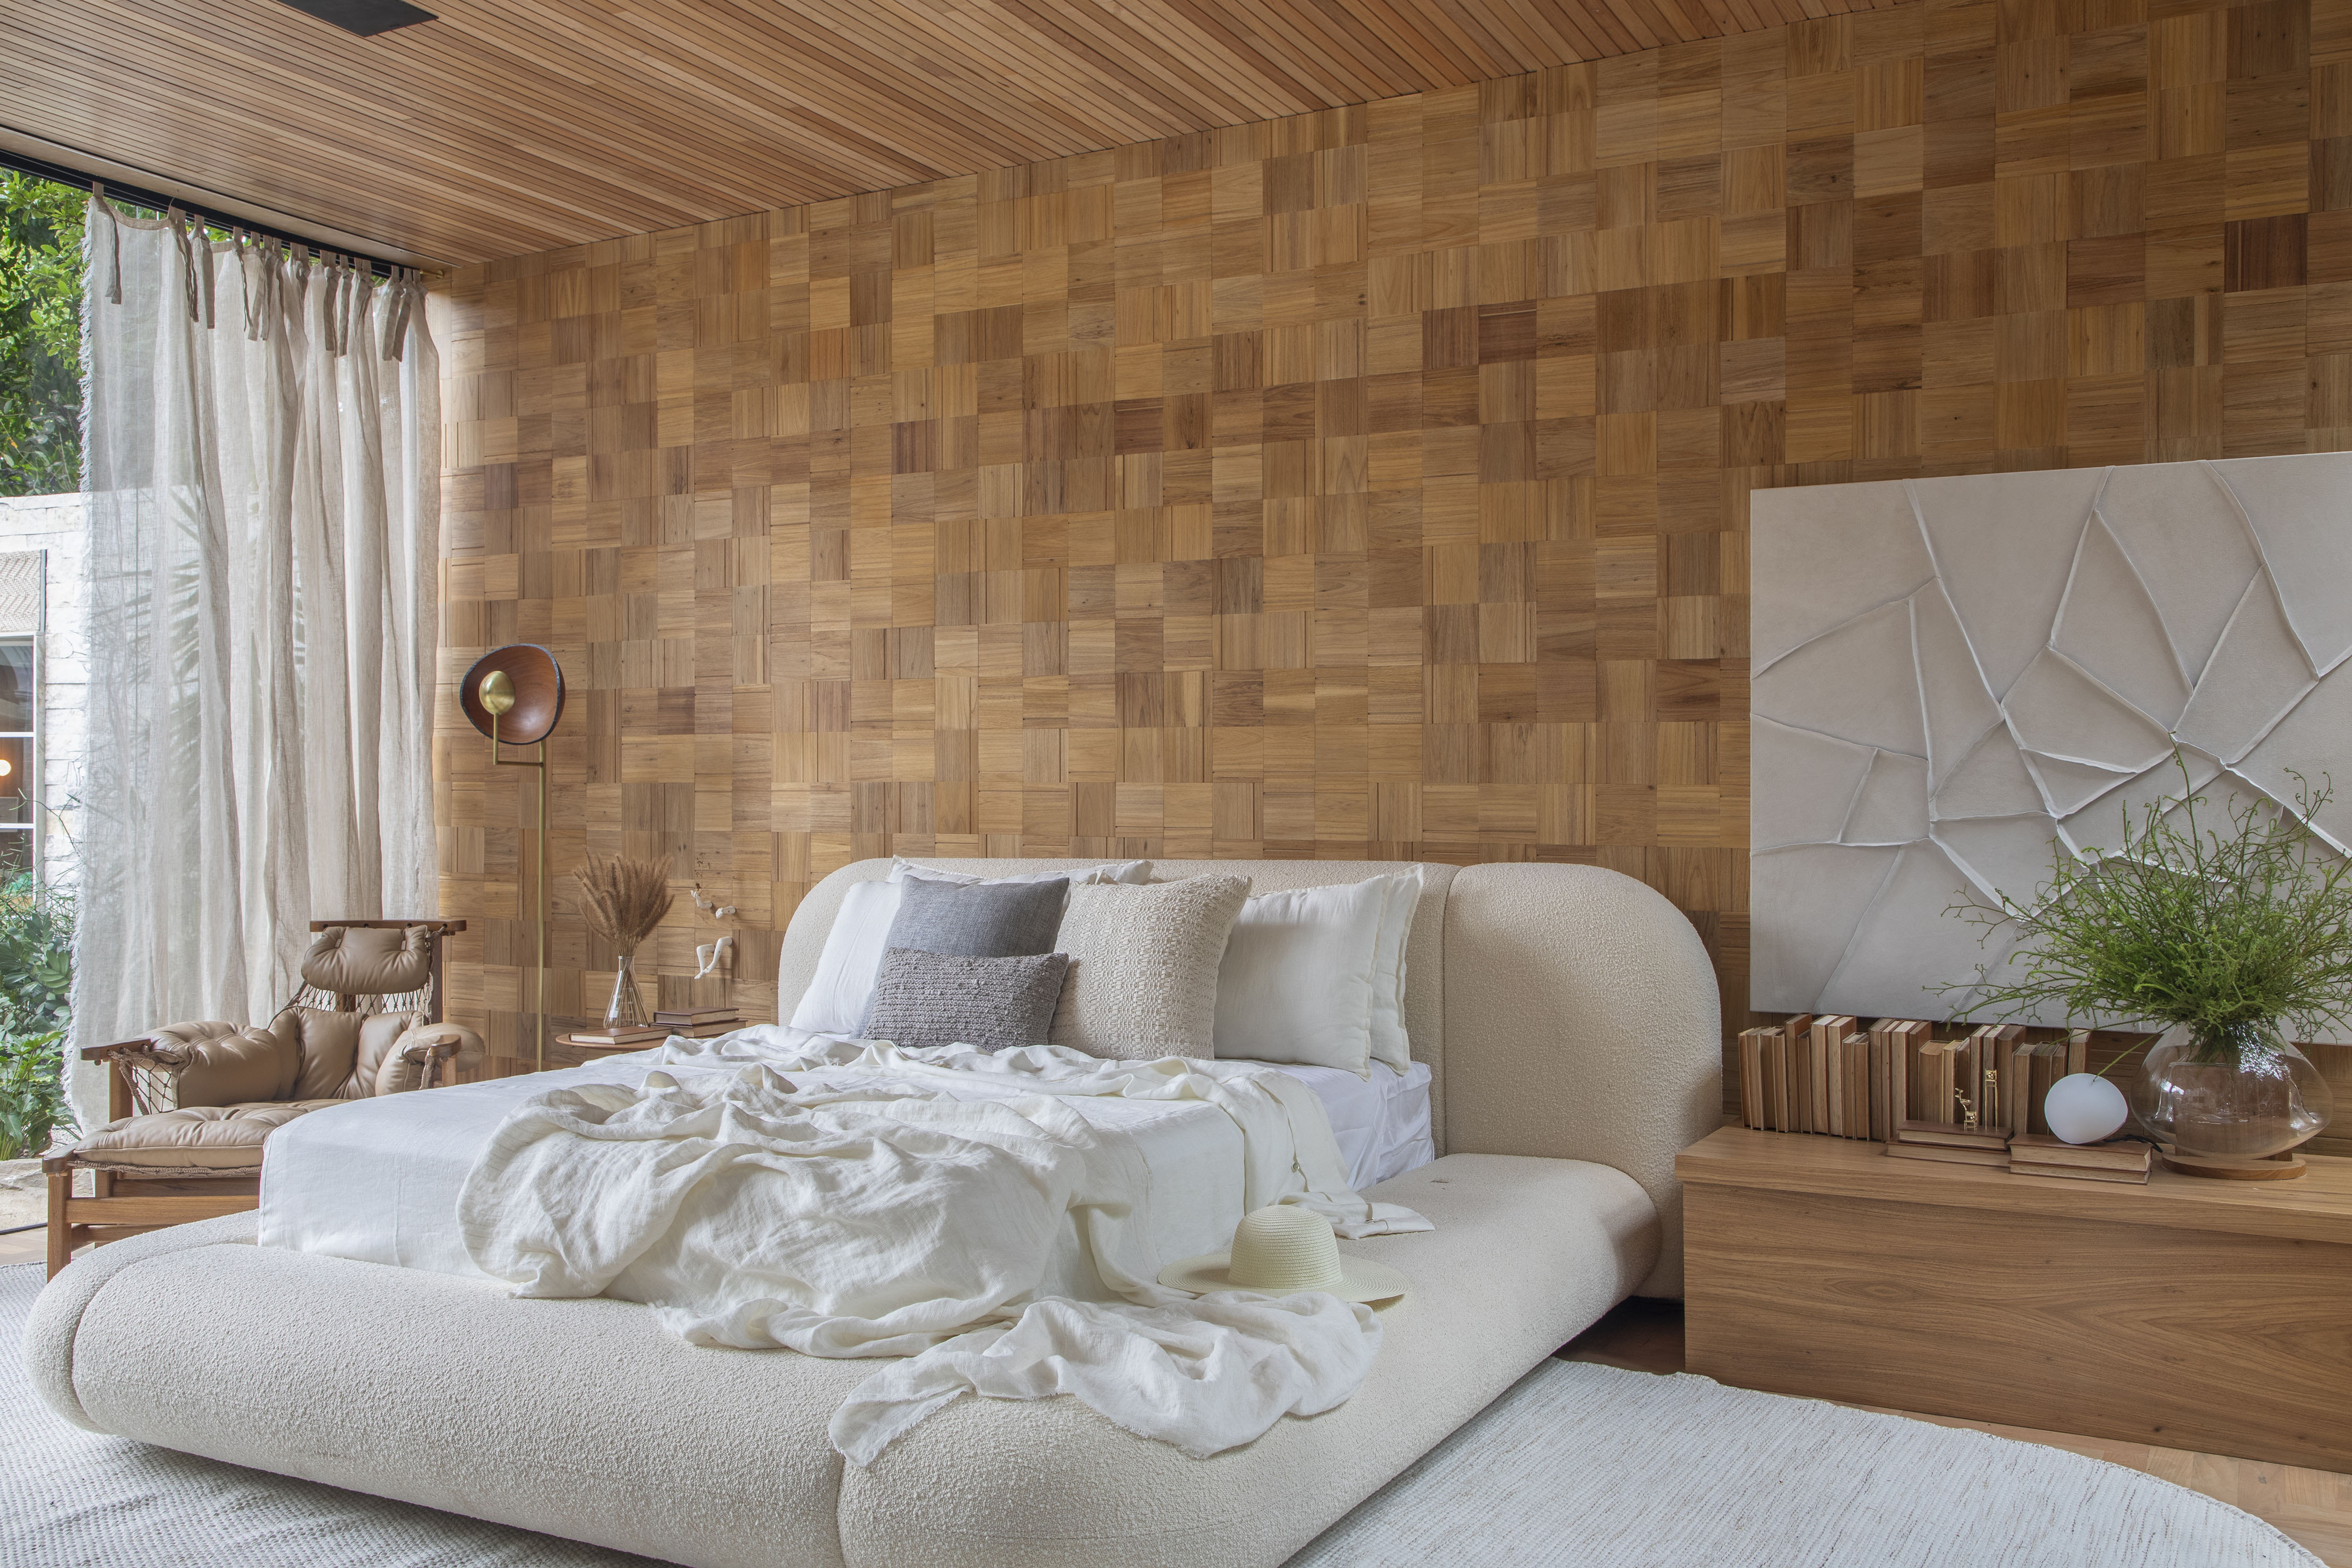 Refúgio do Lago - ambiente de Leila Dionizios. Na foto, quarto com cama de casal, parede de madeira e poltrona jangada.